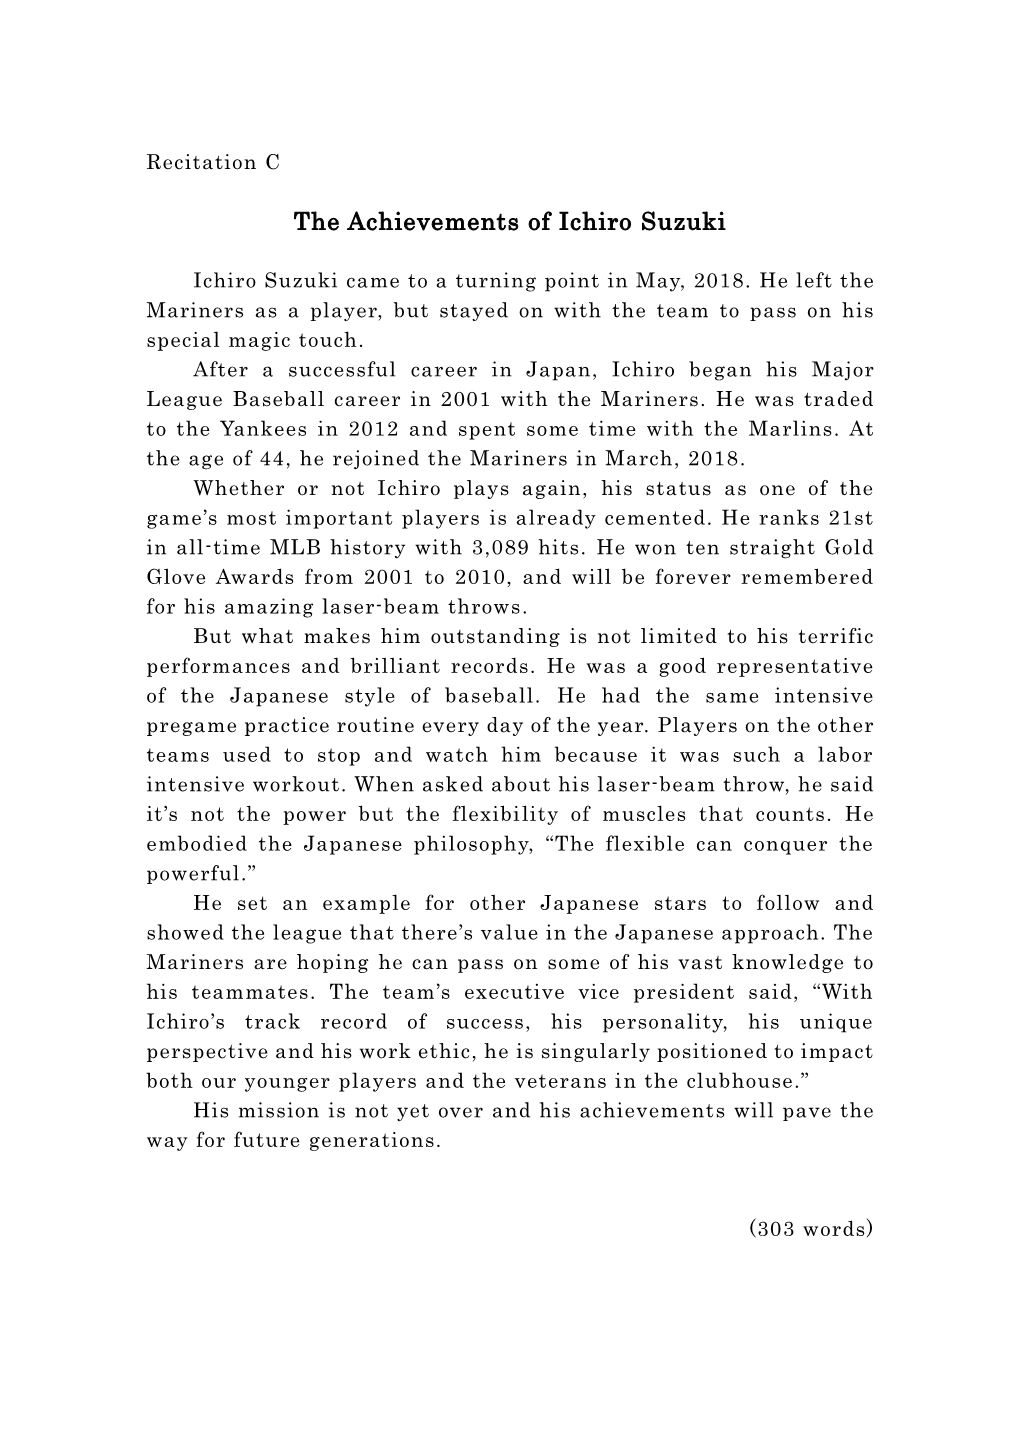 The Achievements of Ichiro Suzuki